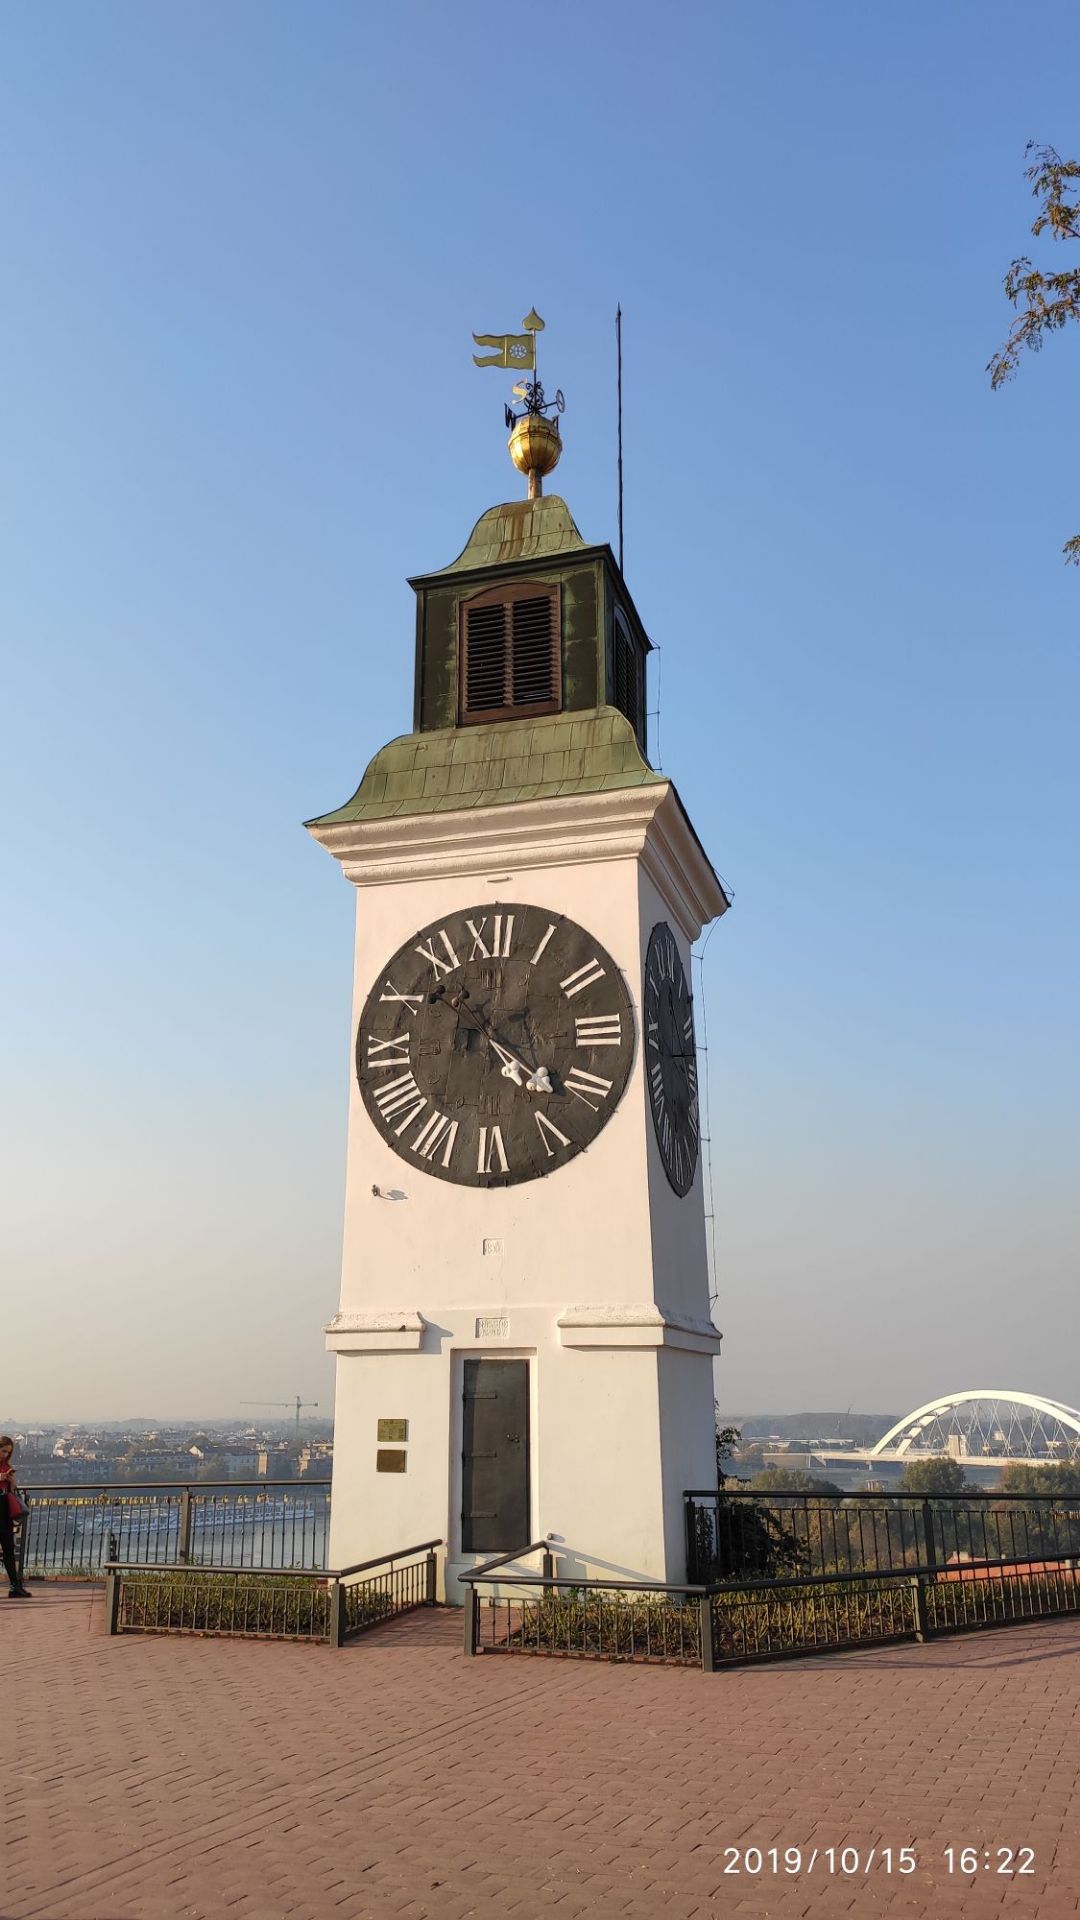 灯塔的时钟比较有特点  钟塔的最大看点是时针和分针调换使用，长针指“时”，短针指“分”。其实这一设计